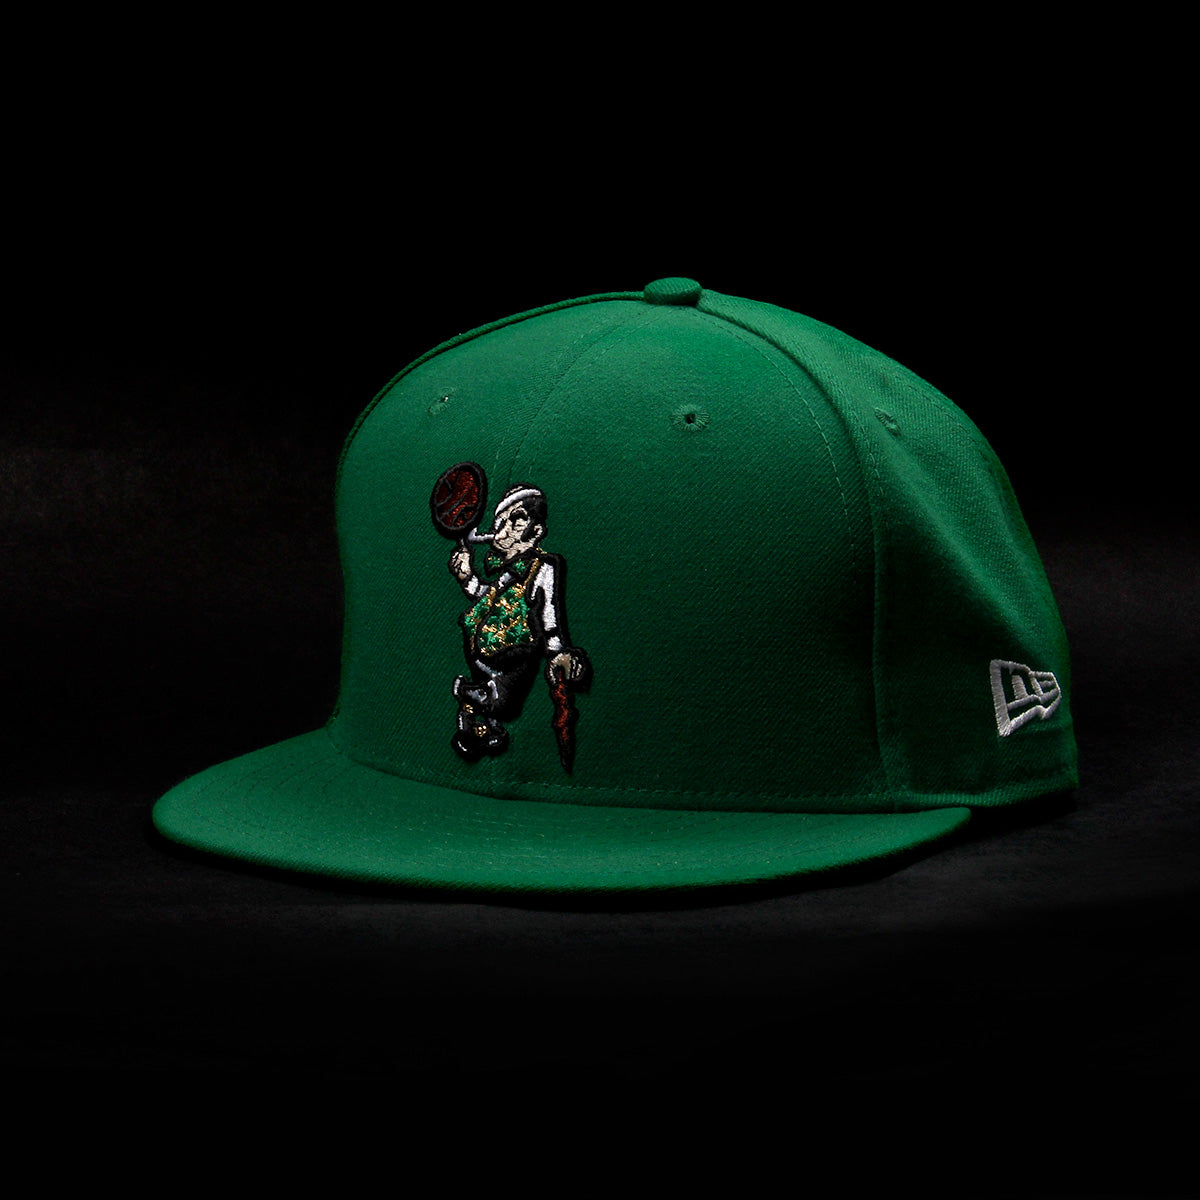 New Era x NBA Tribute Hat - Concepts Intl.